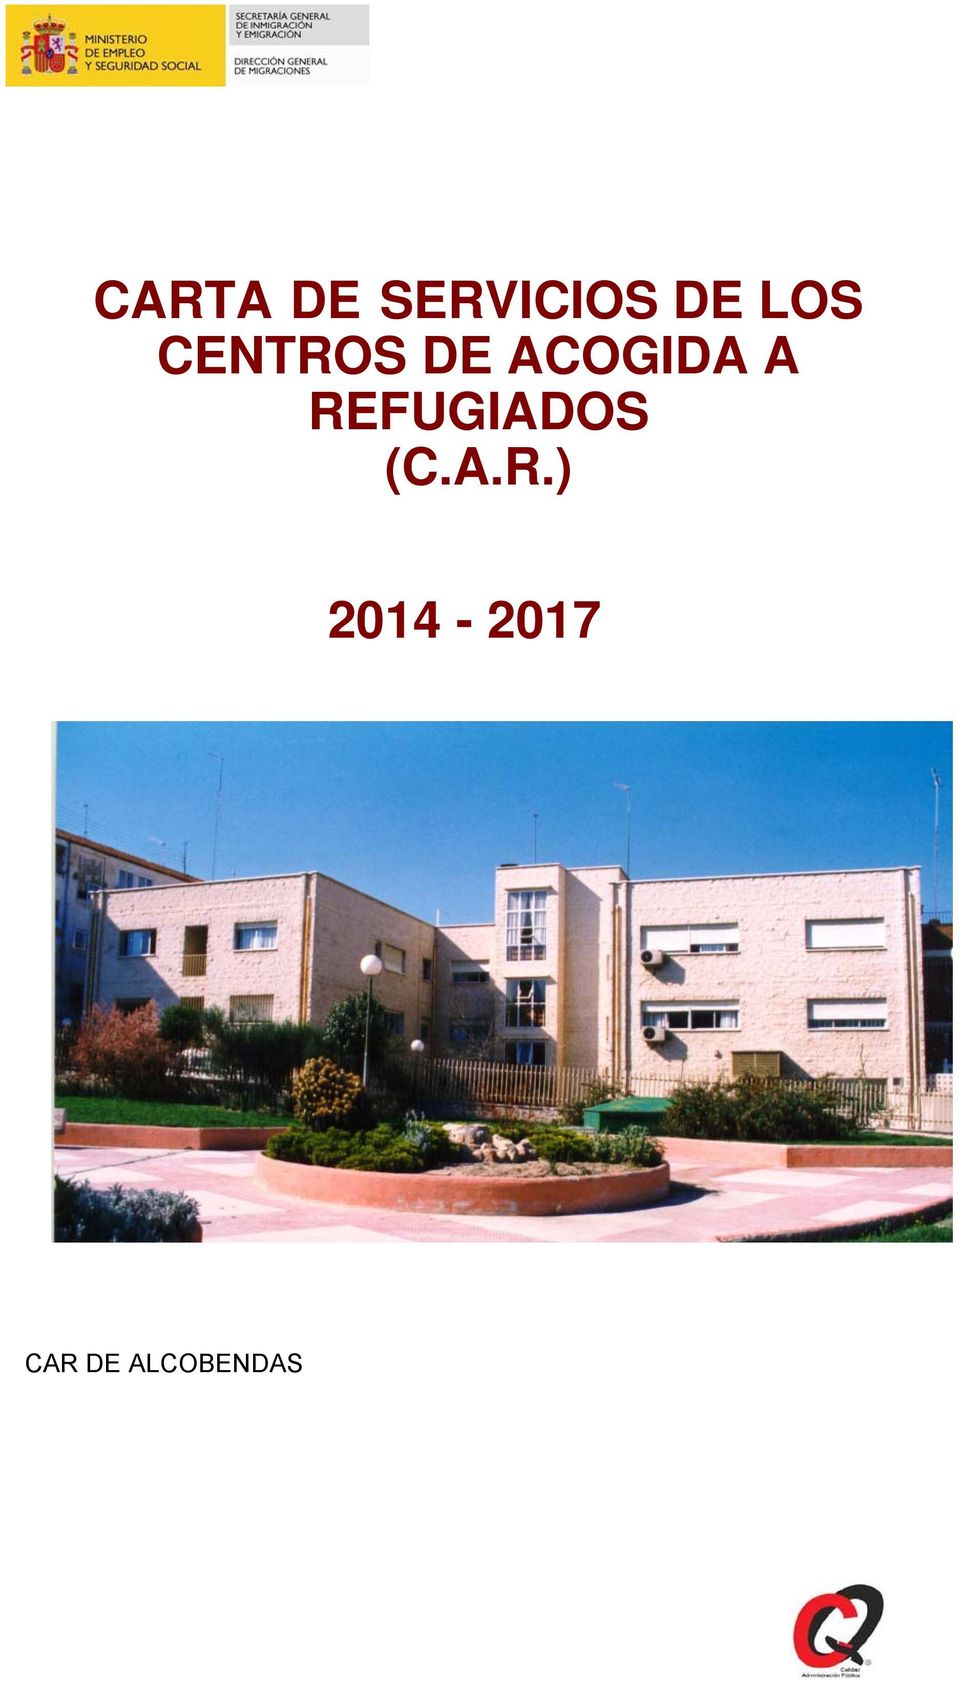 A REFUGIADOS (C.A.R.)